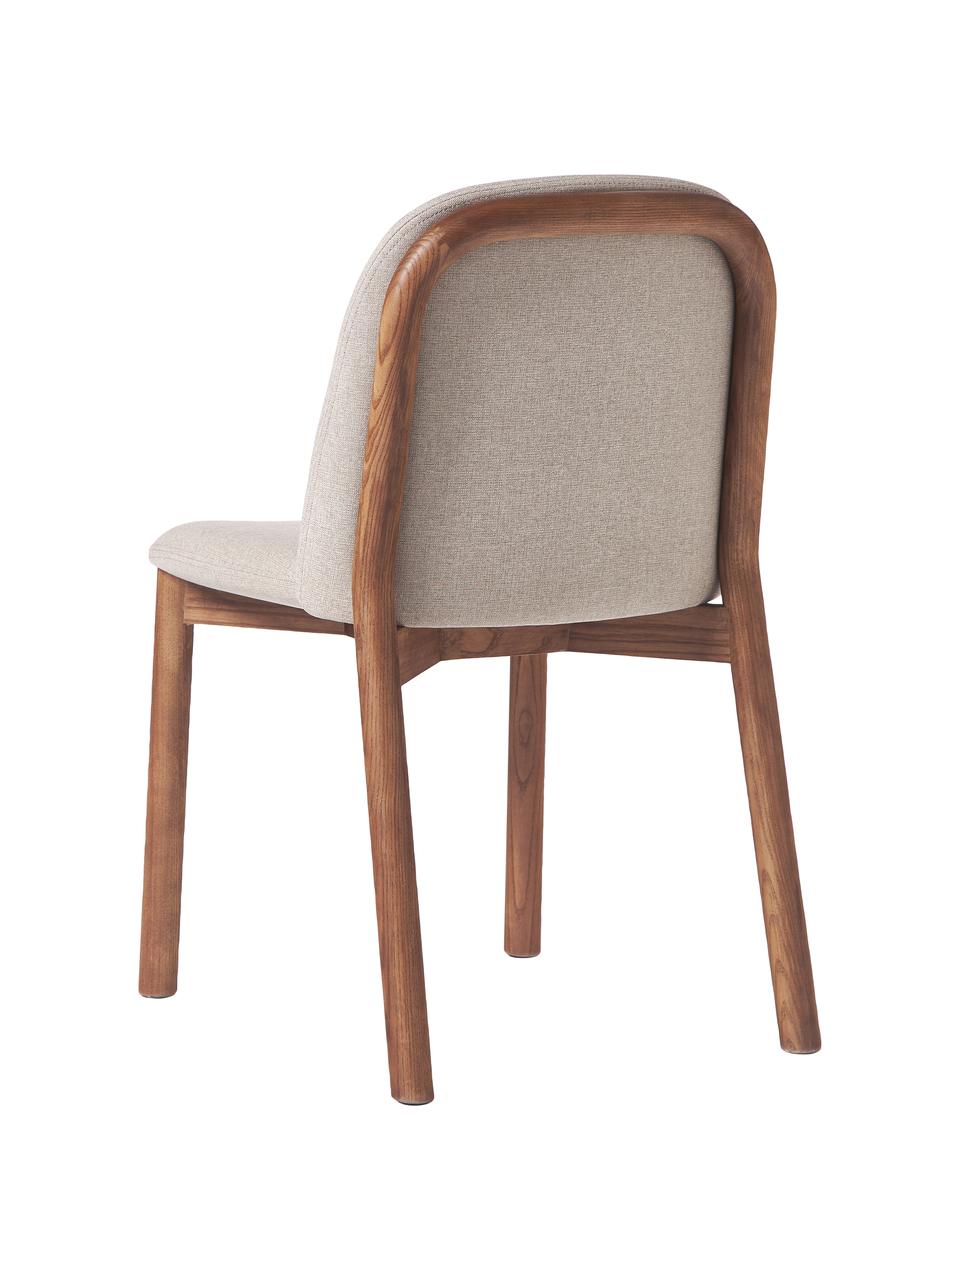 Čalouněná židle z jasanového dřeva Julie, Taupe, tmavé jasanové dřevo, Š 47 cm, V 81 cm